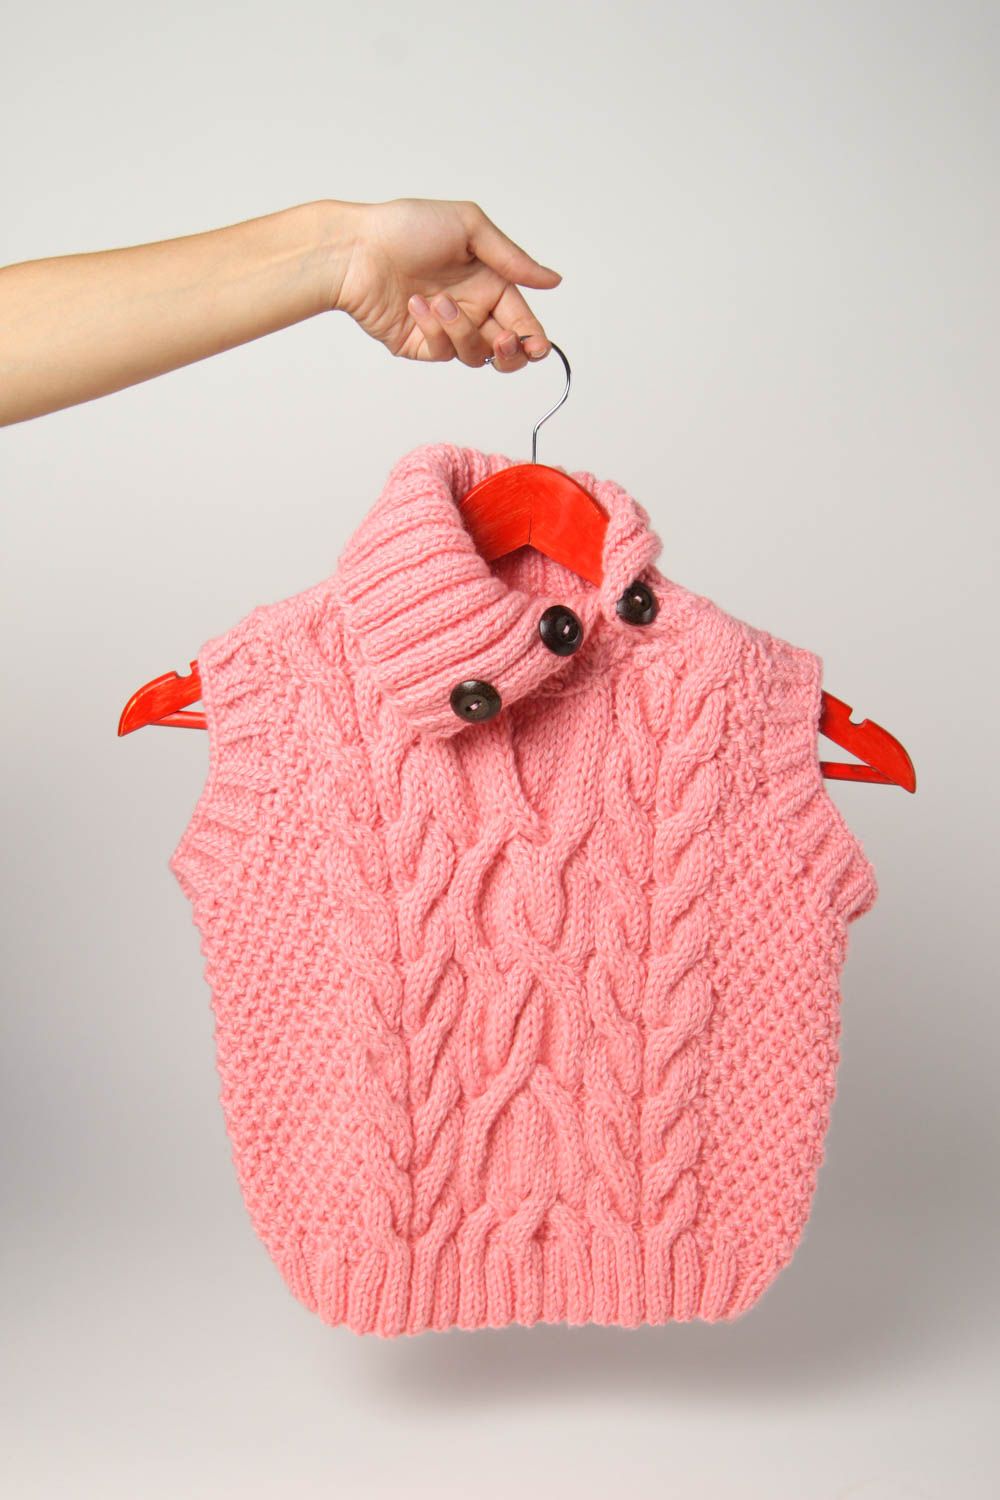 Chaleco infantil artesanal tejido a dos agujas ropa para niñas regalo original foto 2